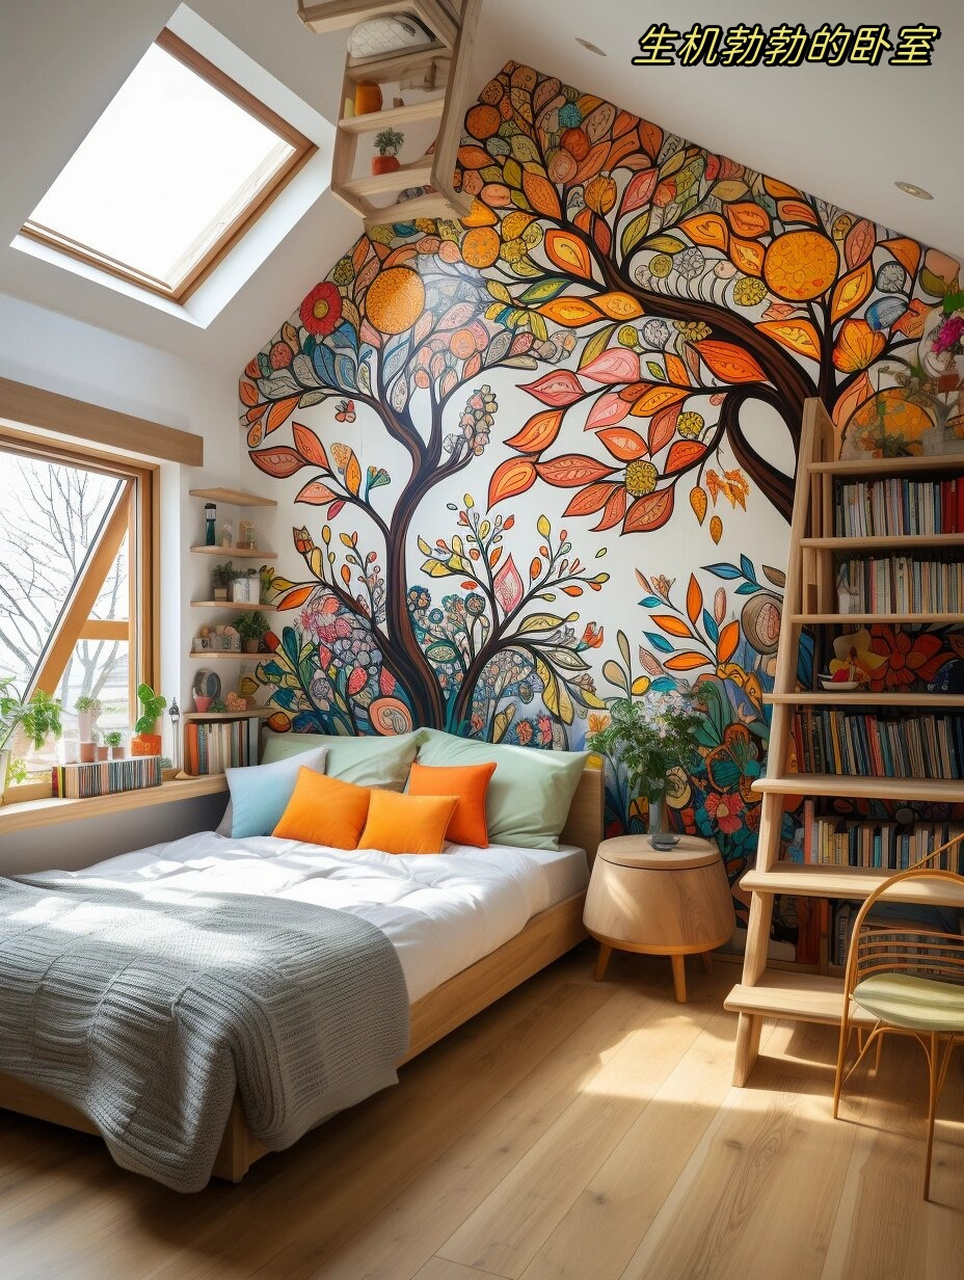 生机勃勃的卧室  墙绘,一种将艺术与生活完美融合的方式